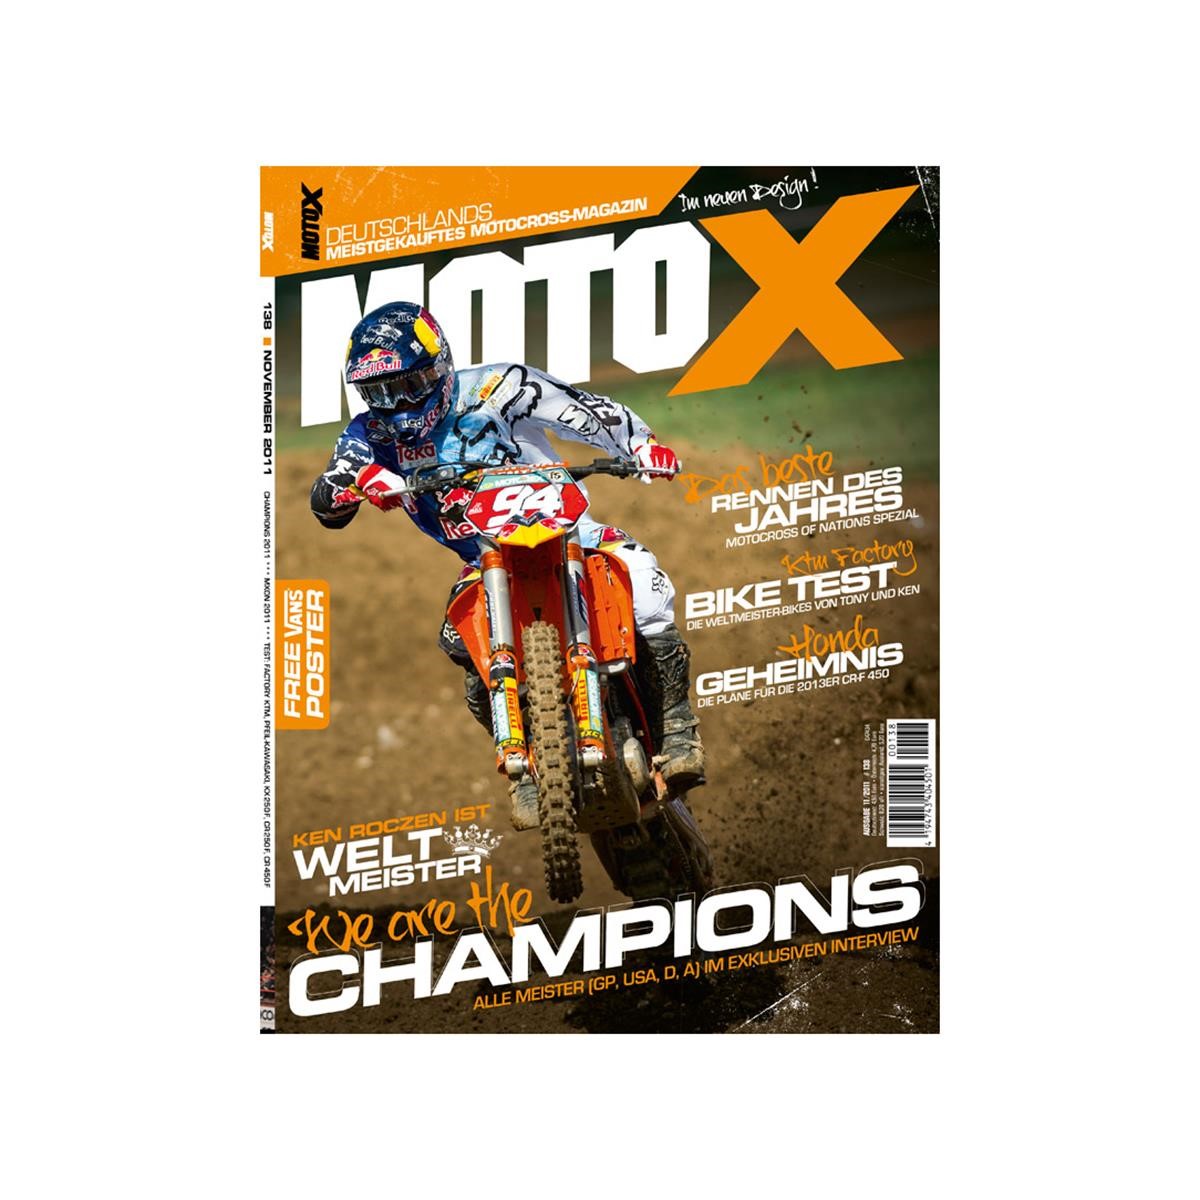 Lebensmittel/Fanartikel/Medien-Zeitschriften/Magazine/Kalender - Magazin MotoX Ausgabe 11/2011